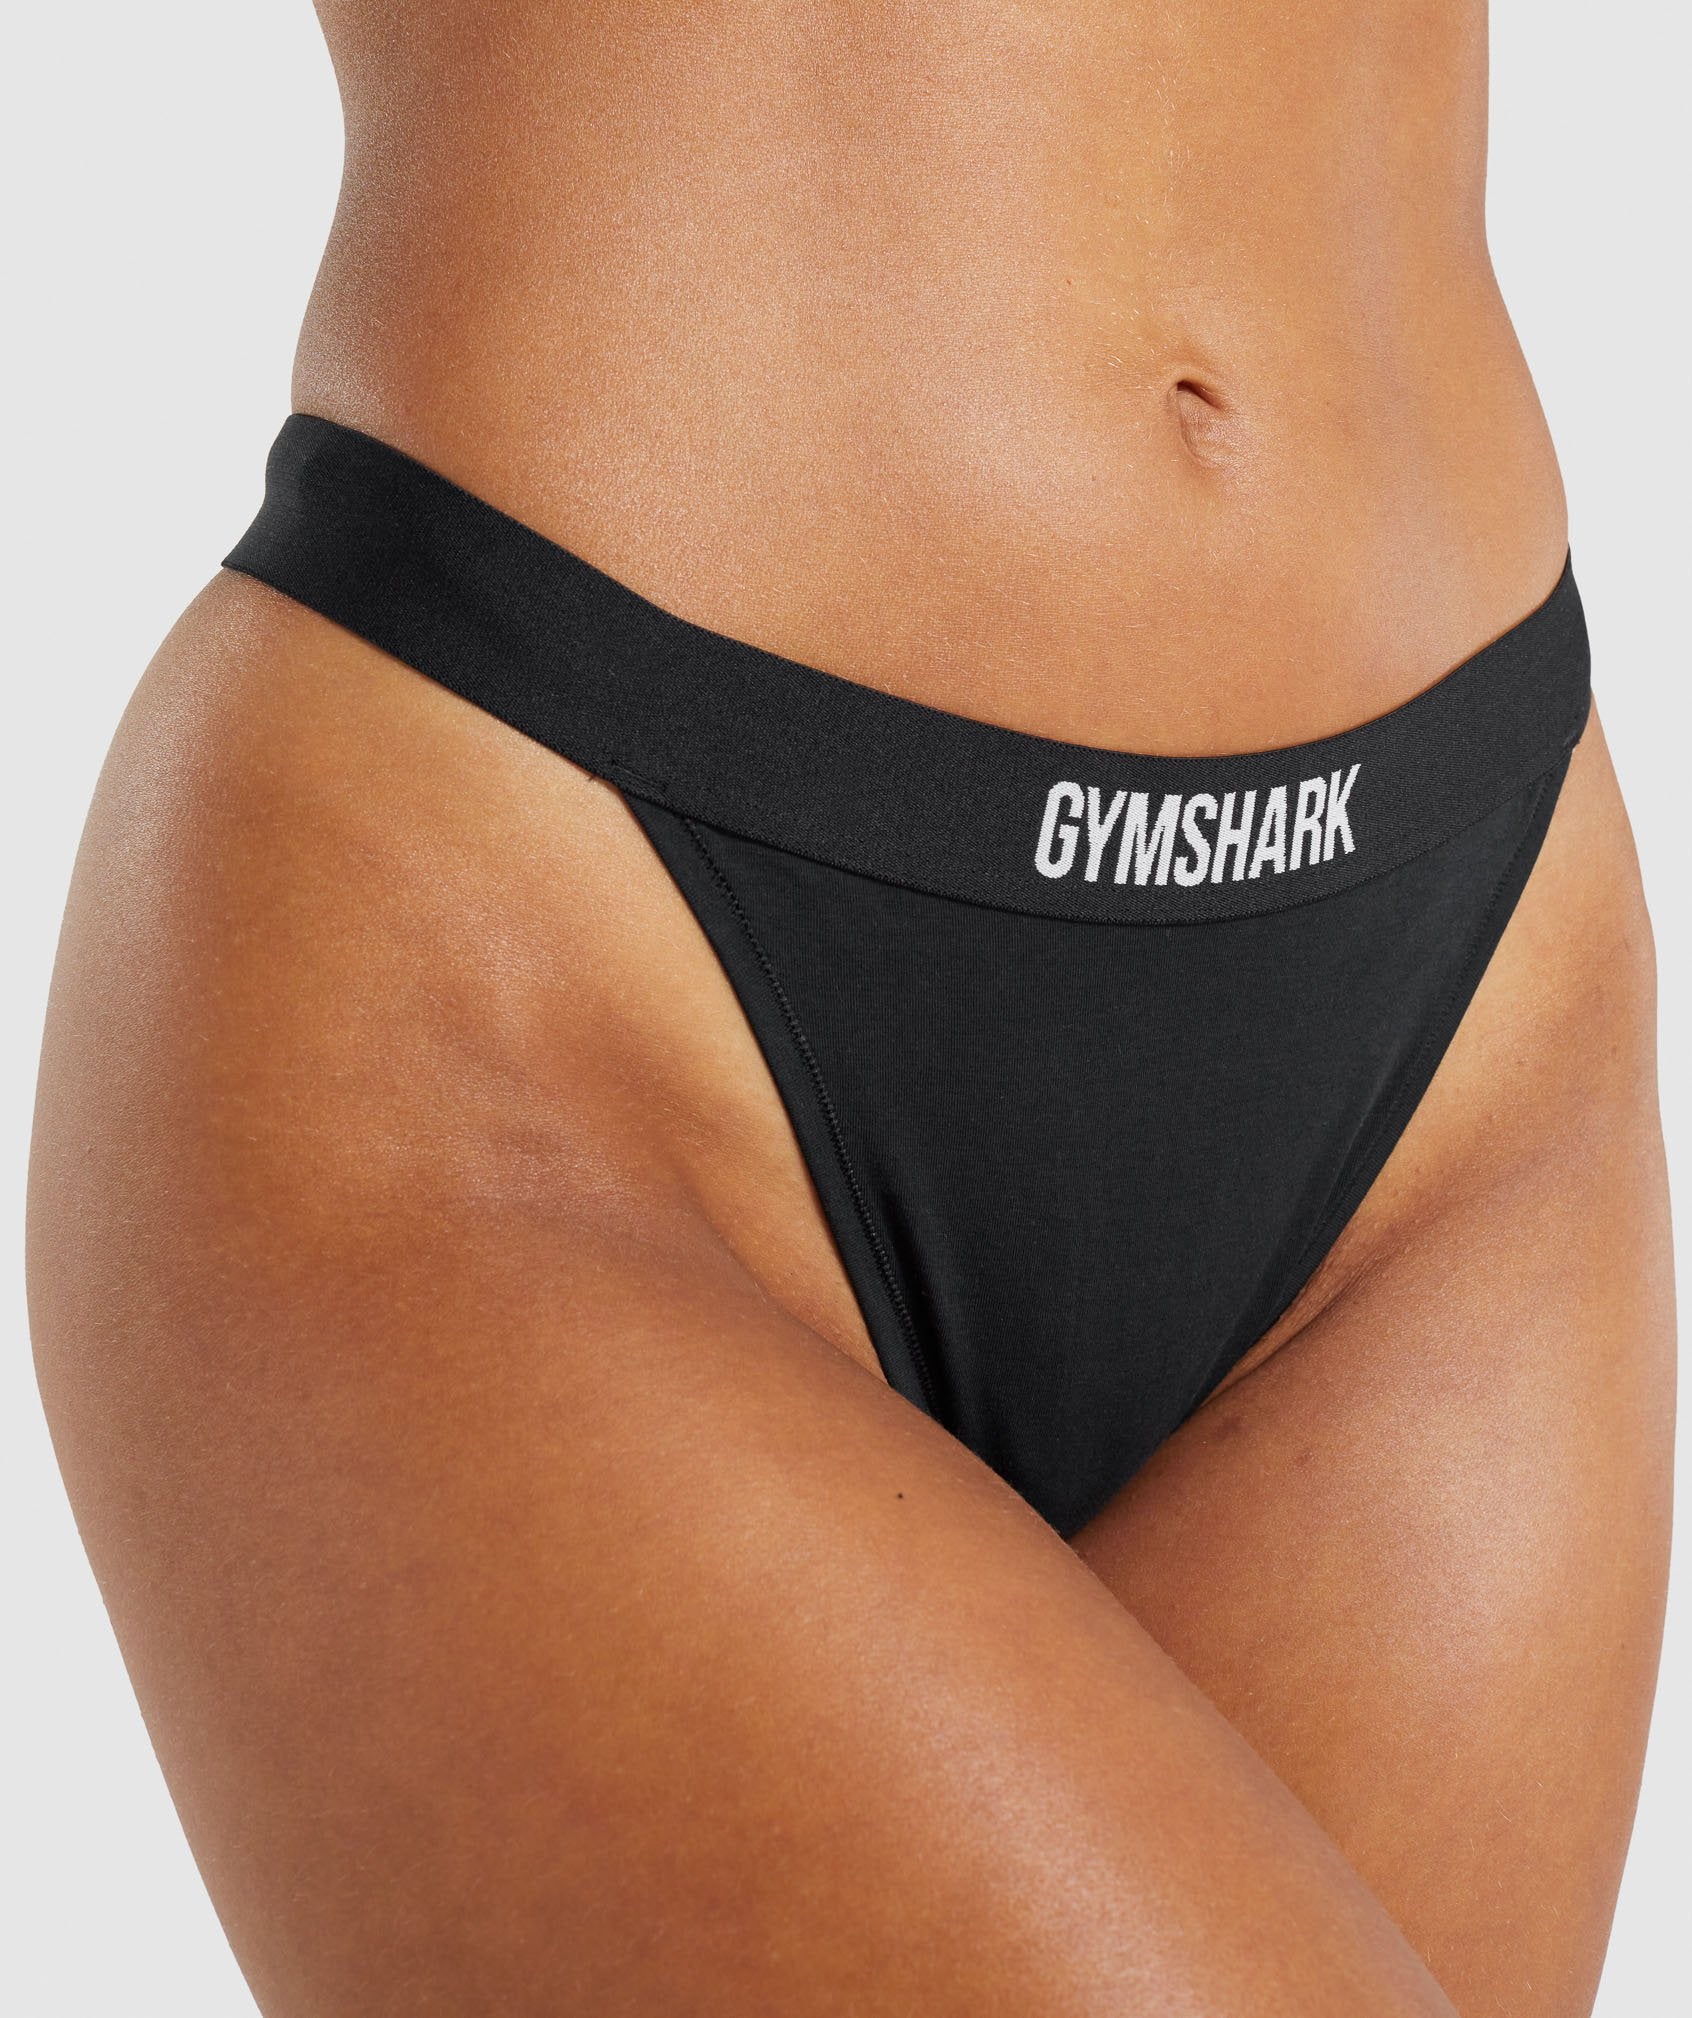 GYMSHARK Gymshark HIGH RISE - Haut de bikini Femme black - Private